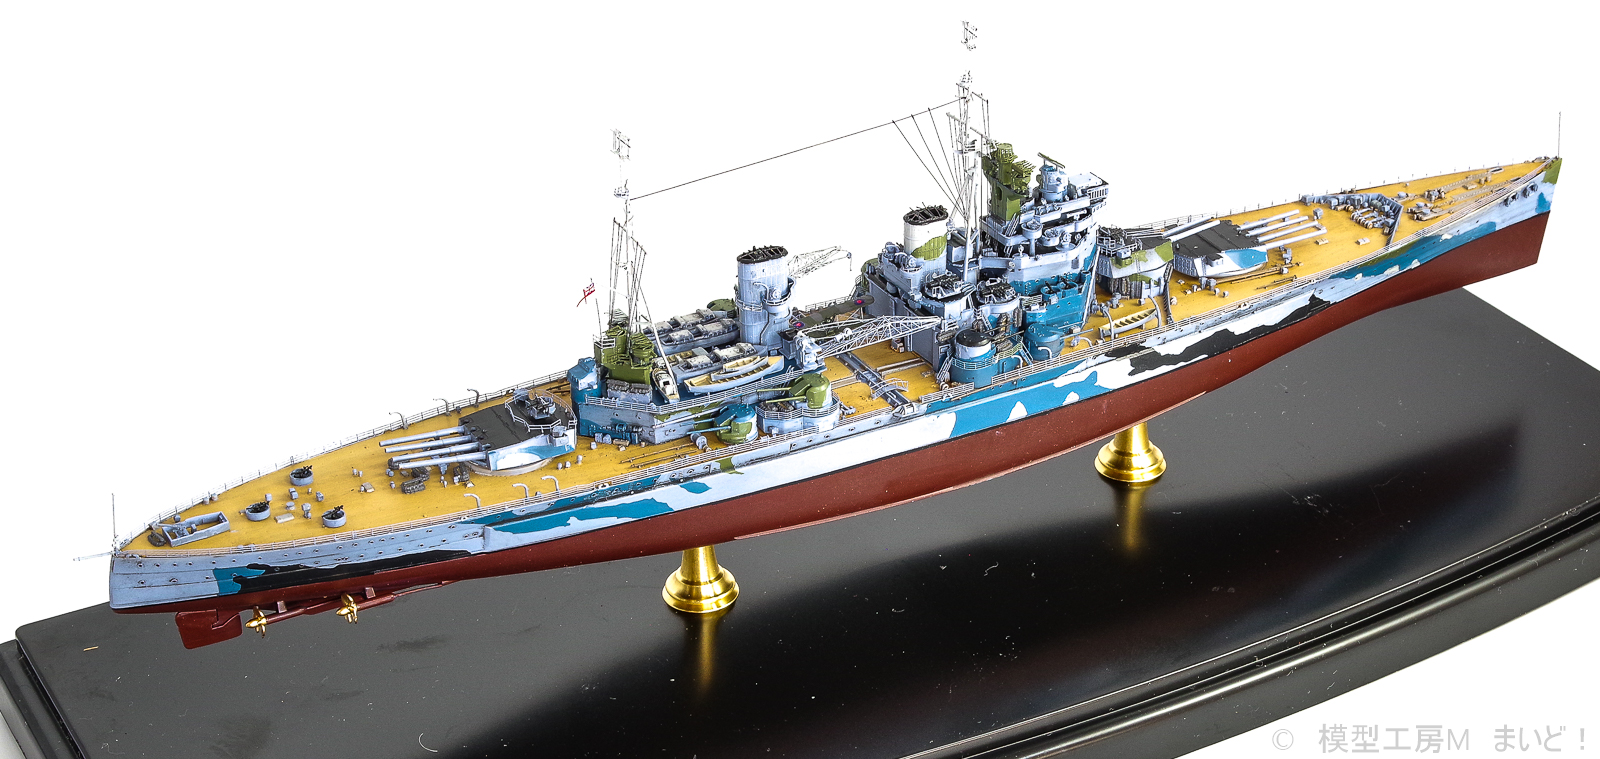 フライホーク 1/700 イギリス戦艦 プリンス・オブ・ウェールズ完成品 FLYHAWK HMS Prince of Wales - 模型工房M